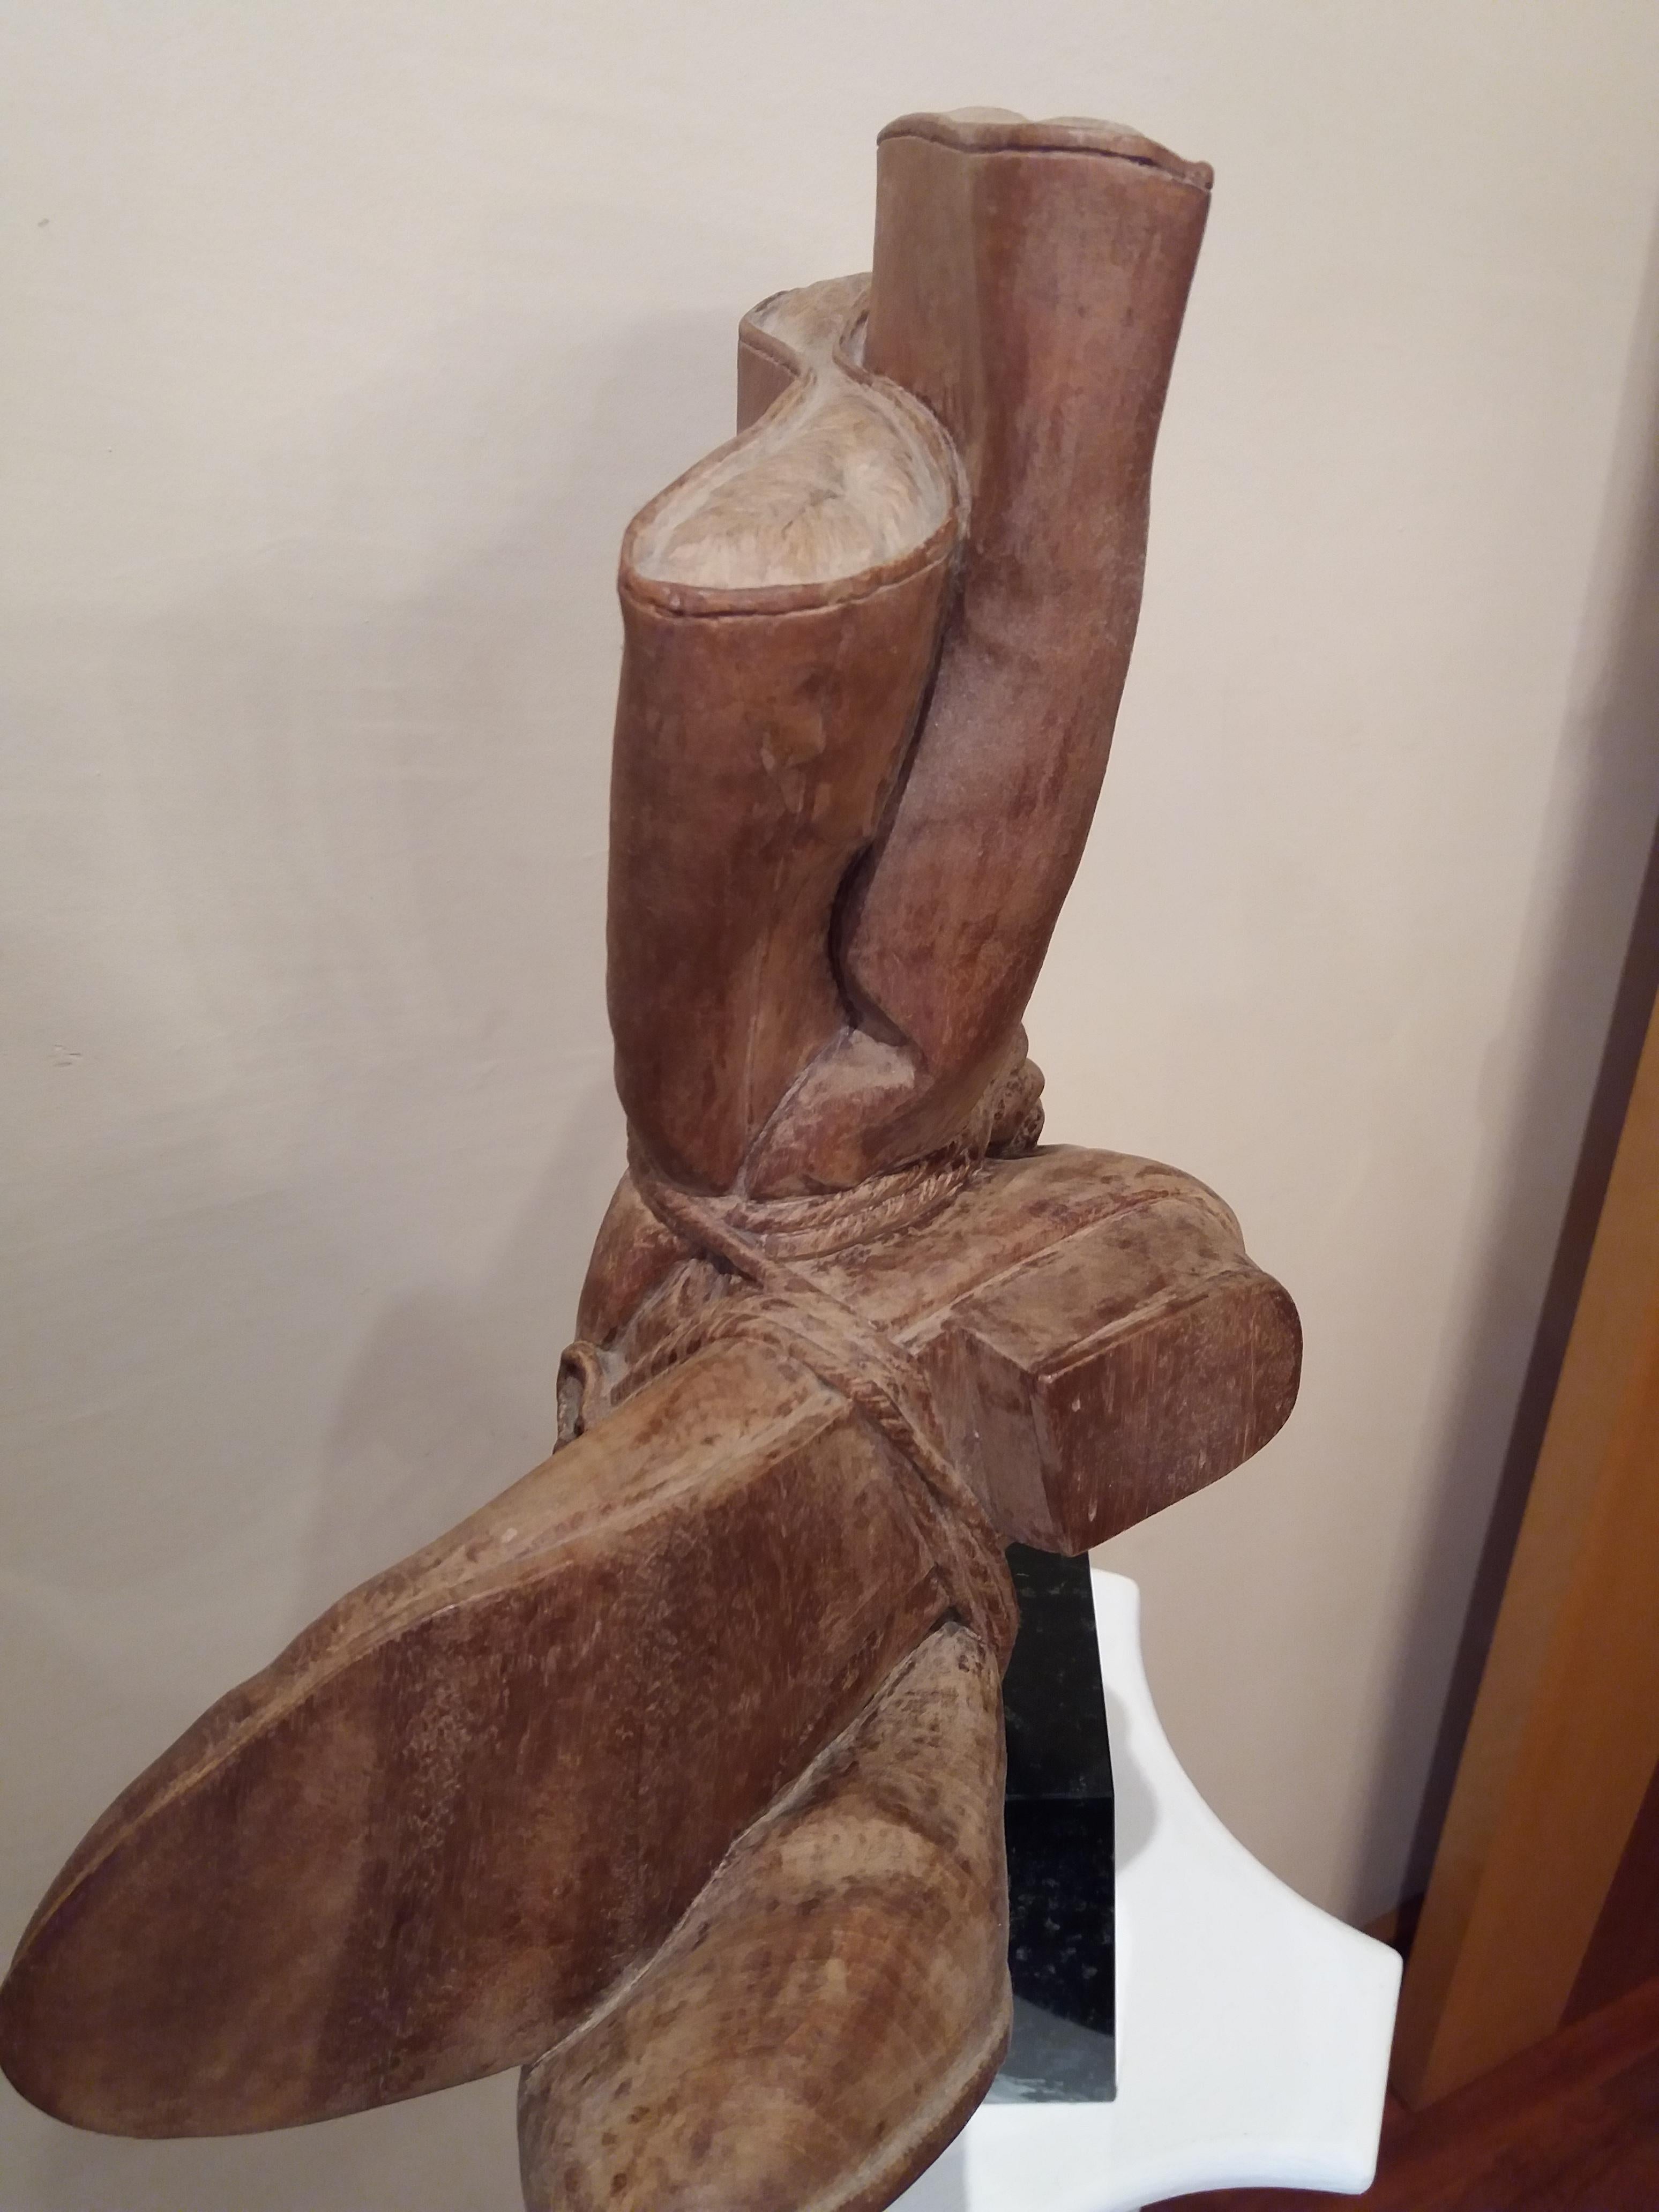   Codina Corona  BOTAS  Boots original wood sculpture 1990 - Sculpture by Josep Maria Codina Corona